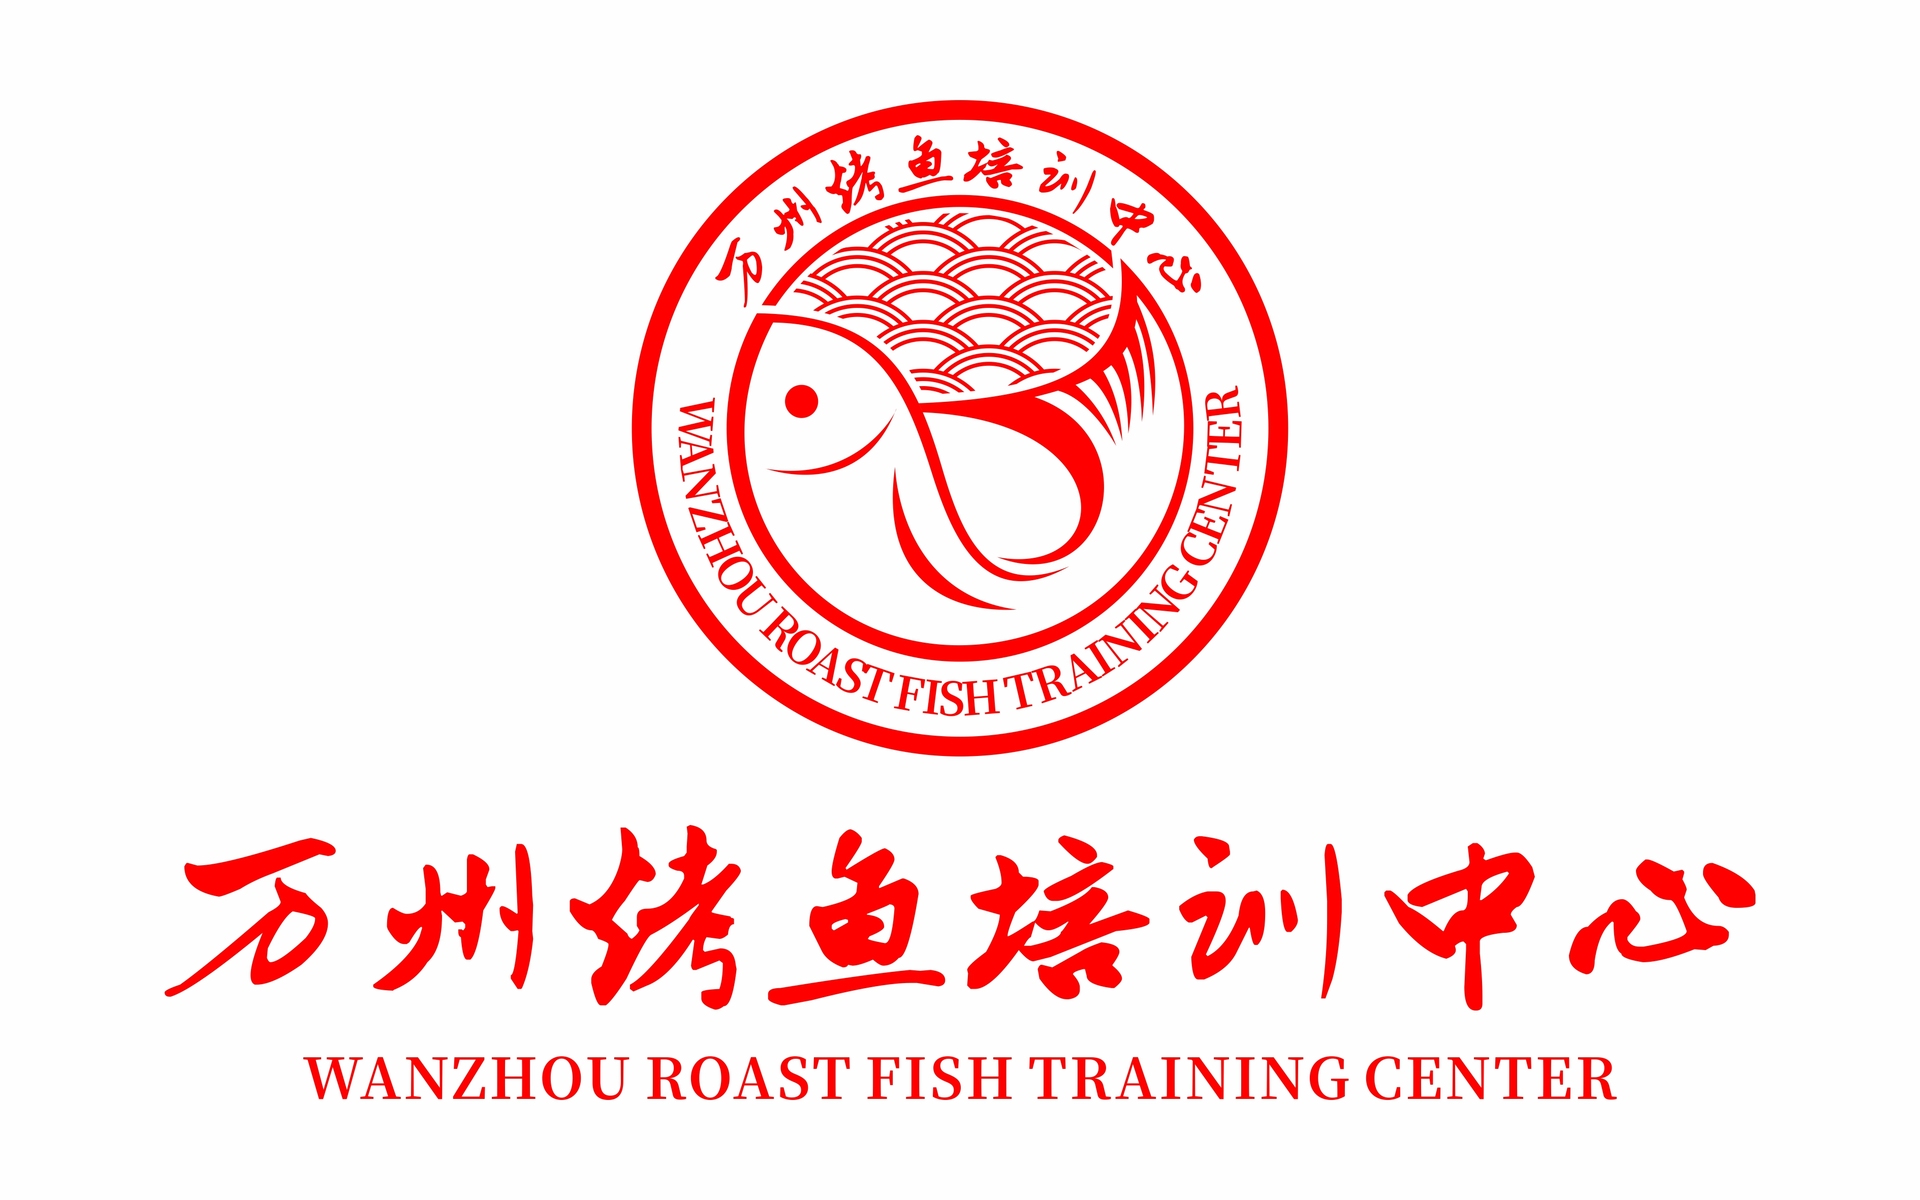 【民营企业】万州烤鱼培训中心